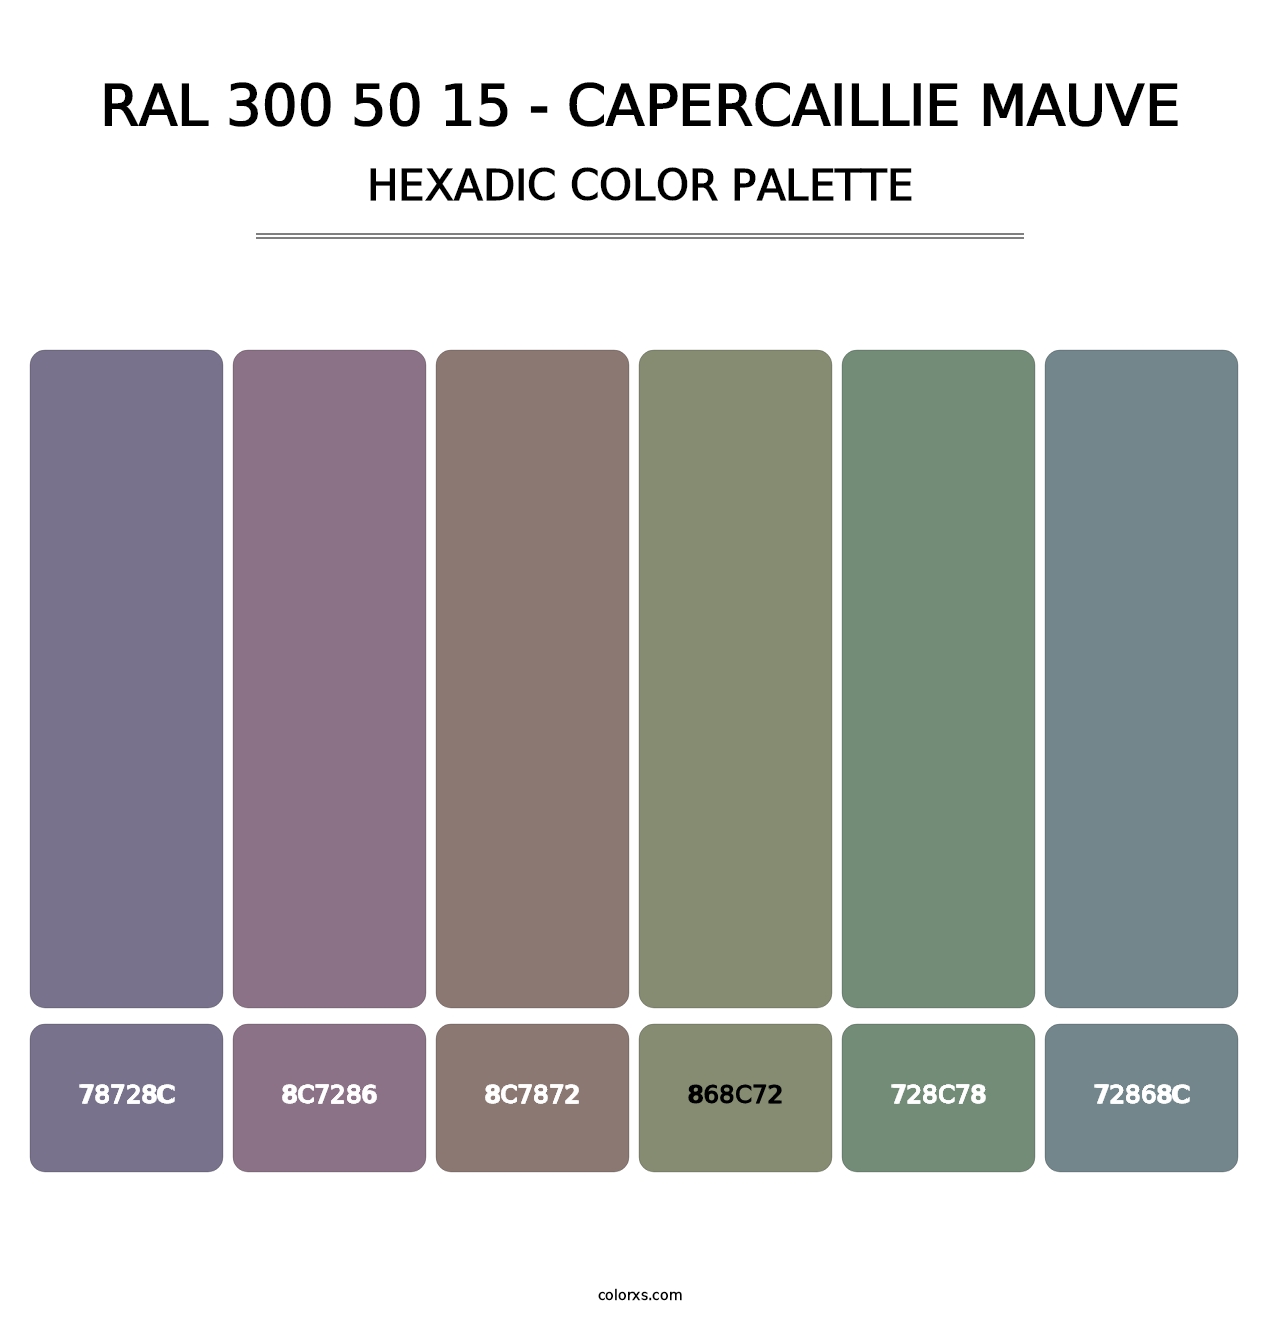 RAL 300 50 15 - Capercaillie Mauve - Hexadic Color Palette